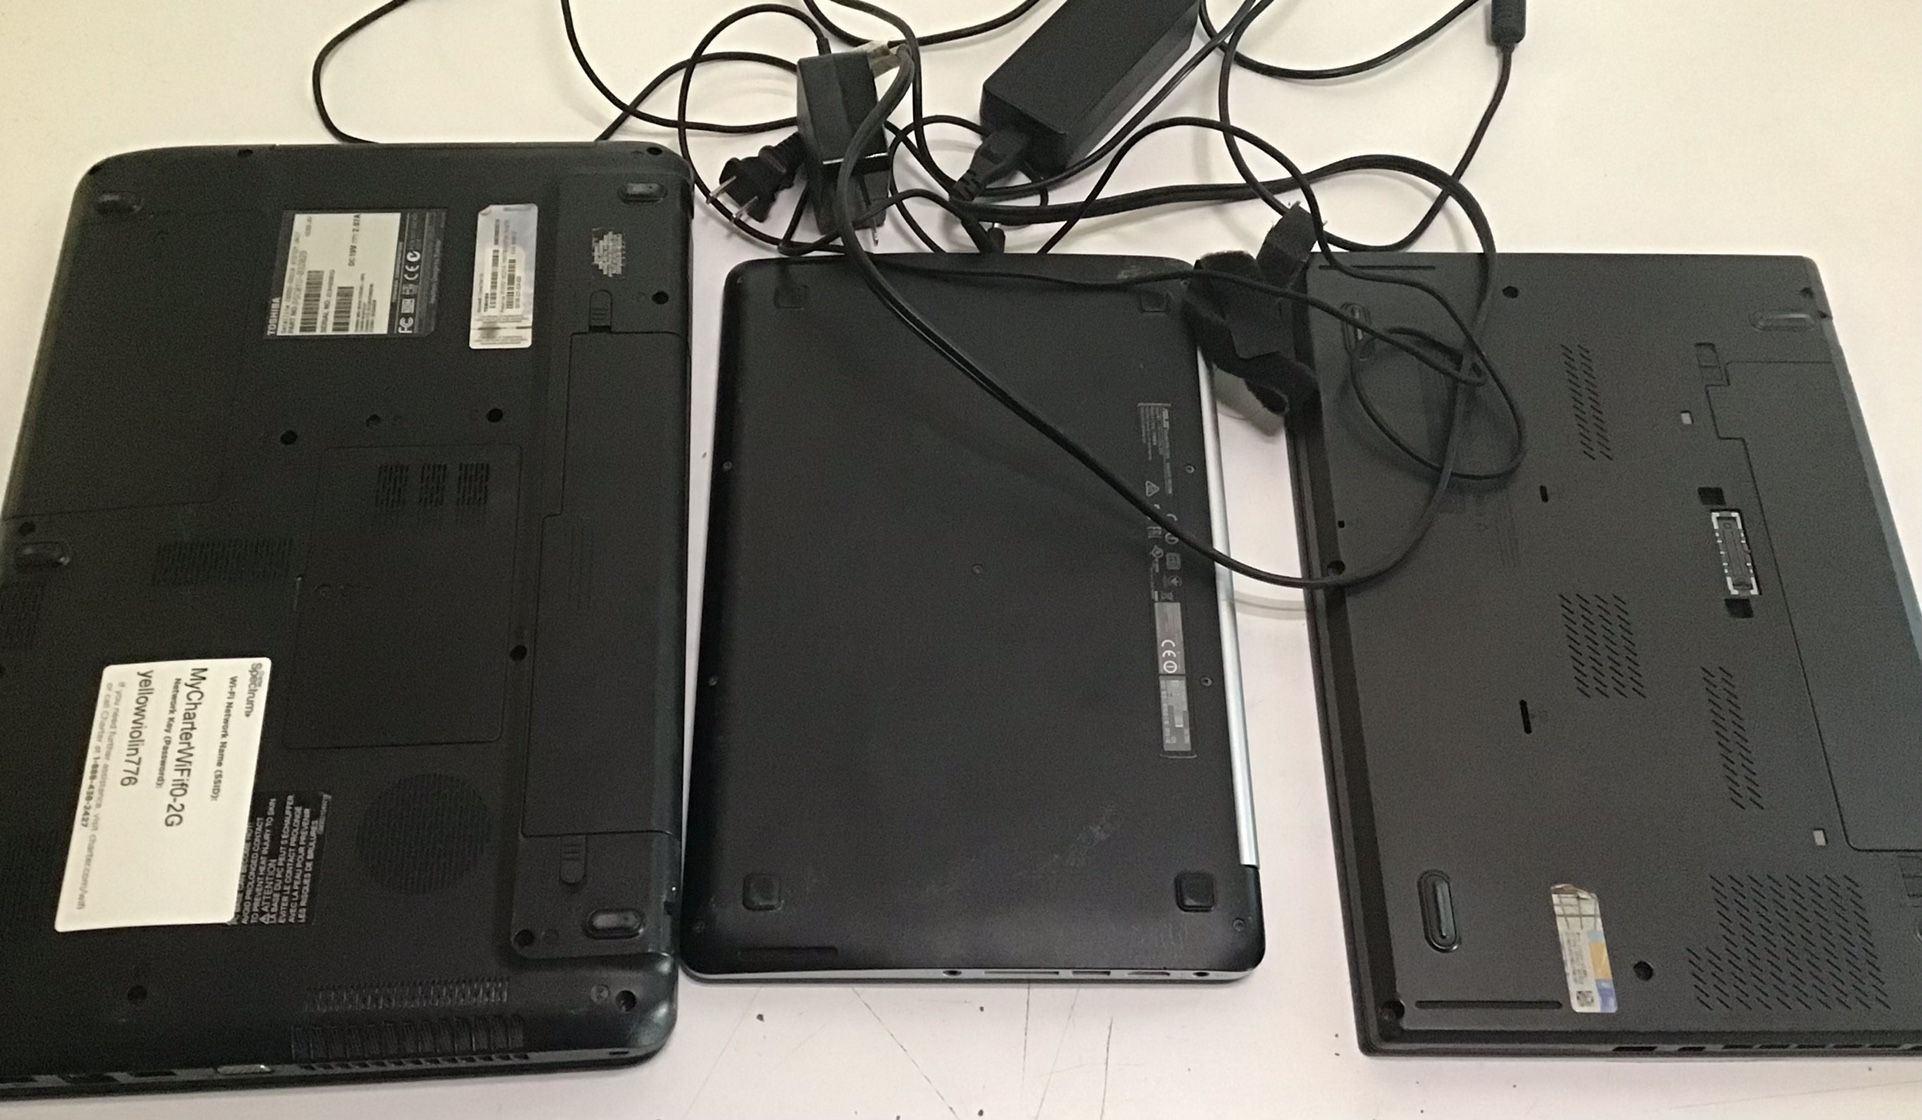 Laptops Working For Repair